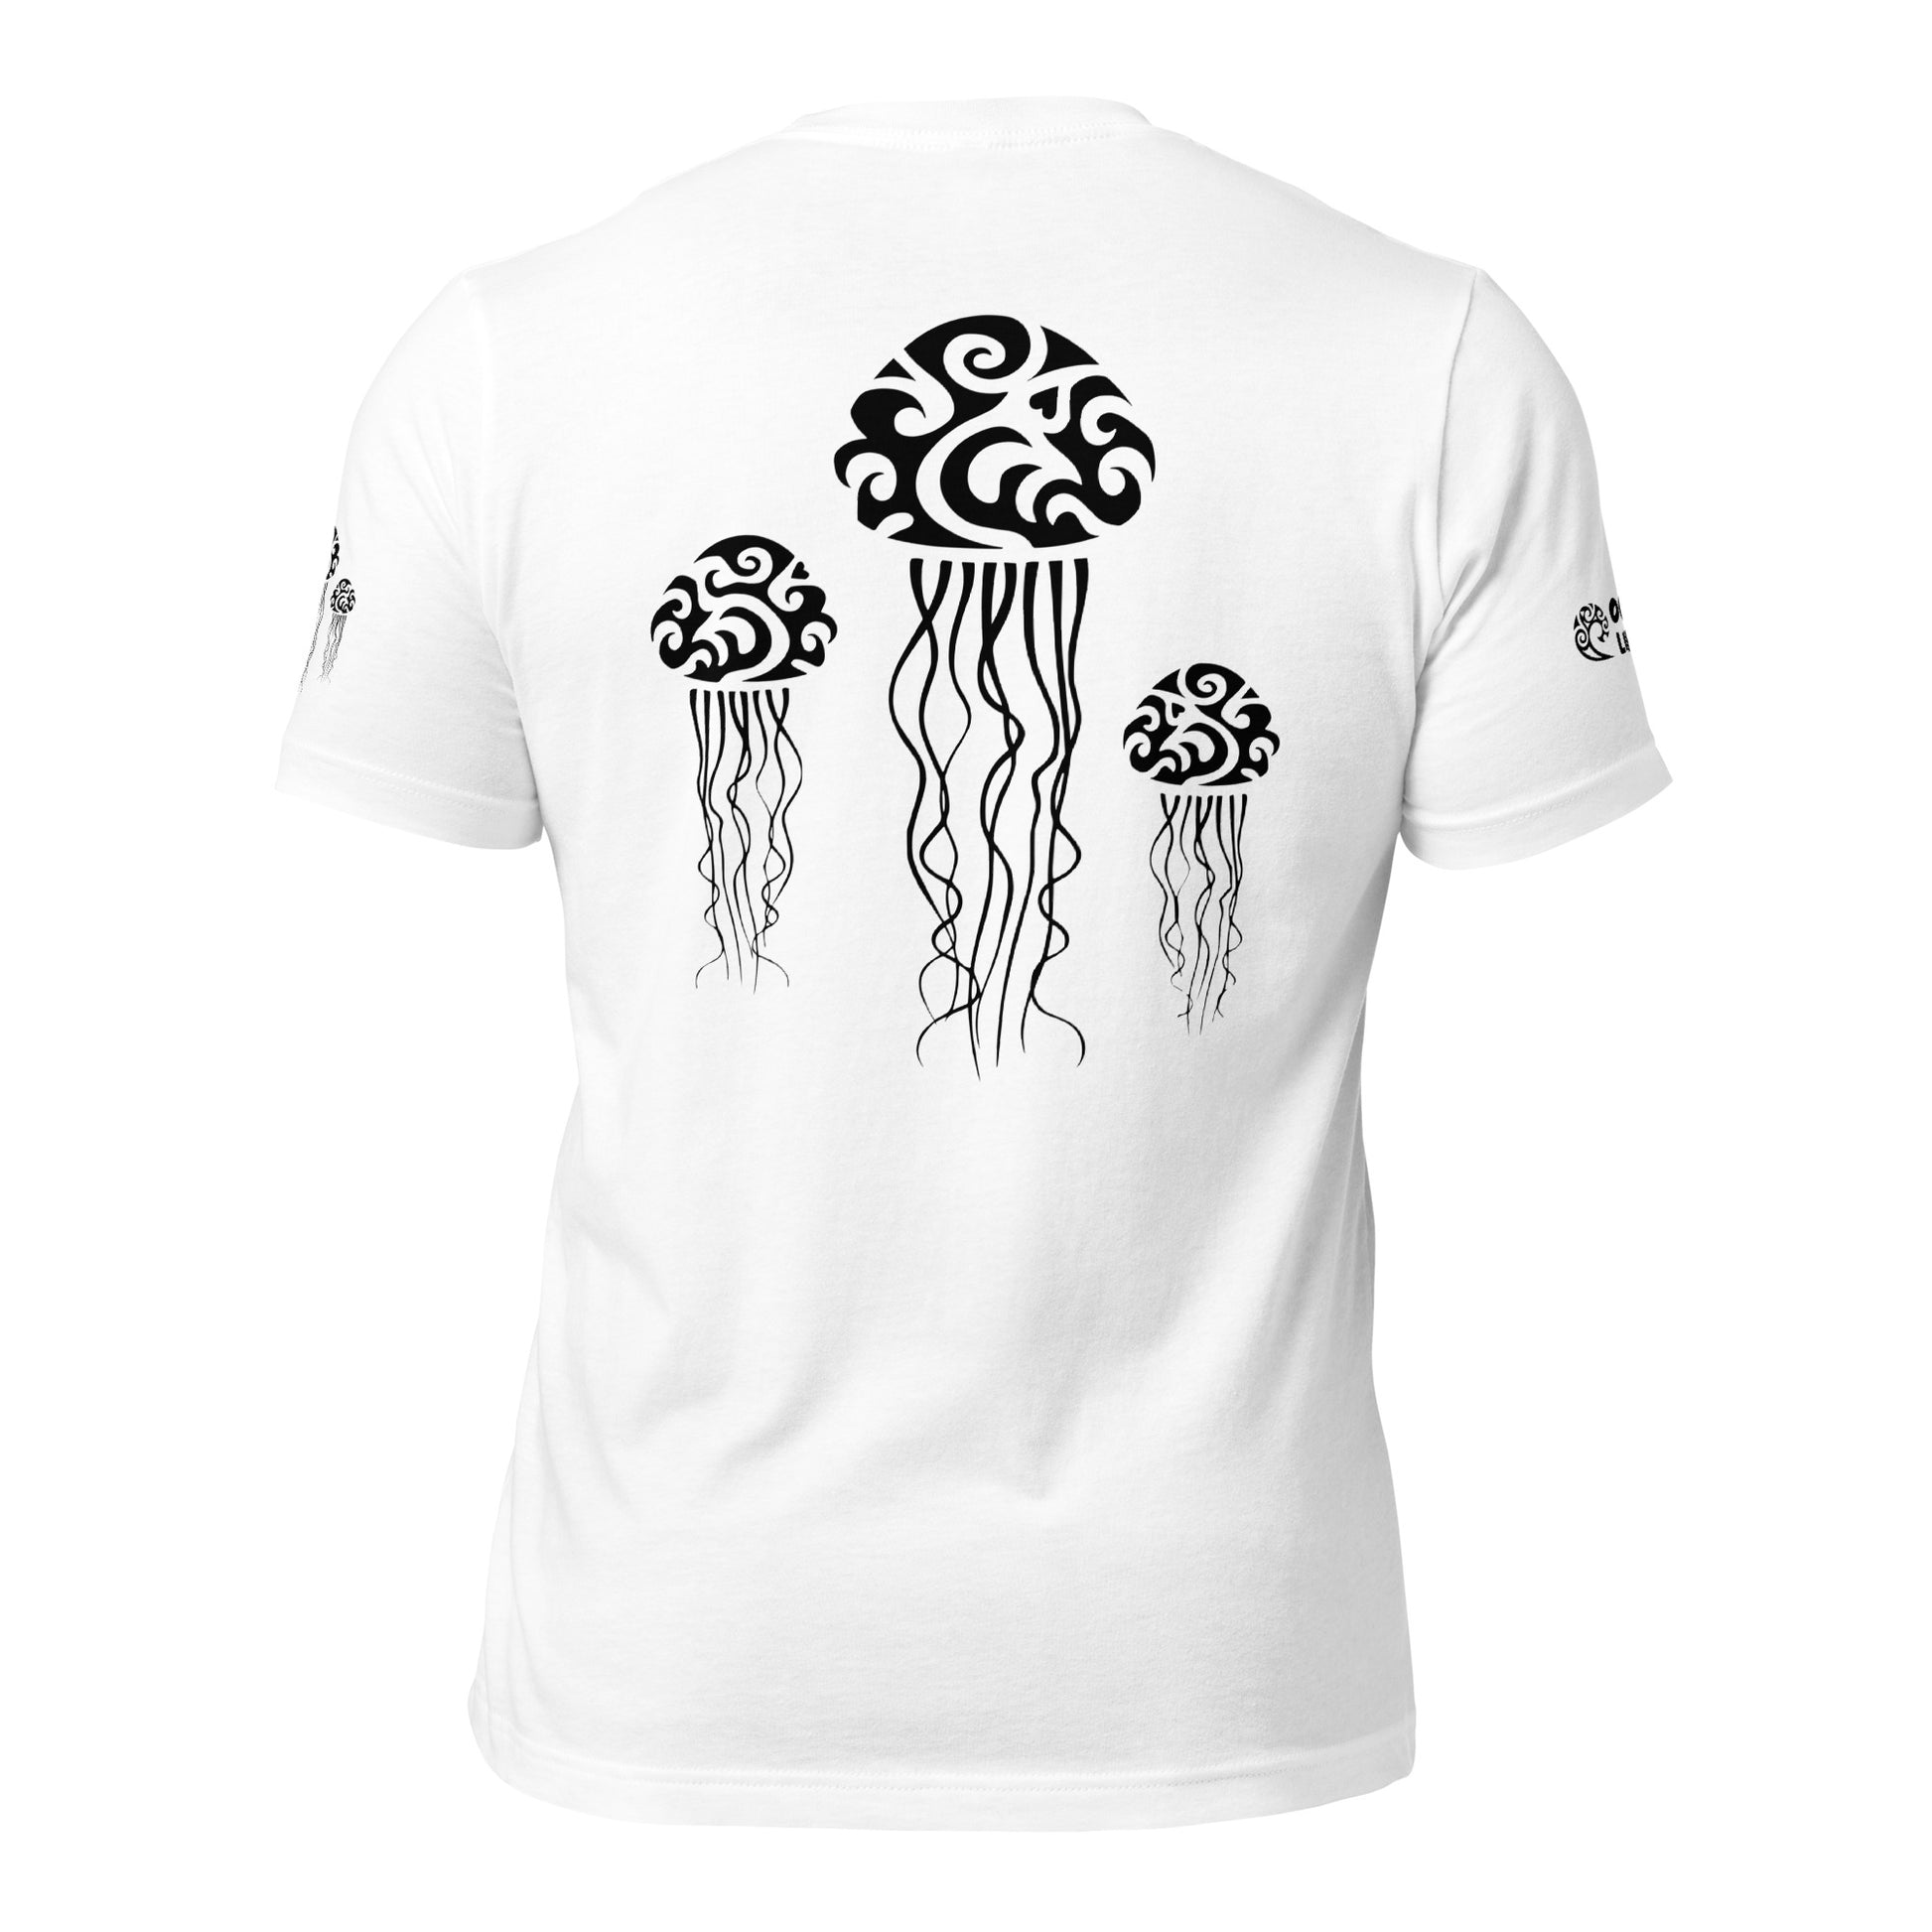 Polynesian T-shirt Jellyfish Tribal Samoan For Men and Women Back Black on White